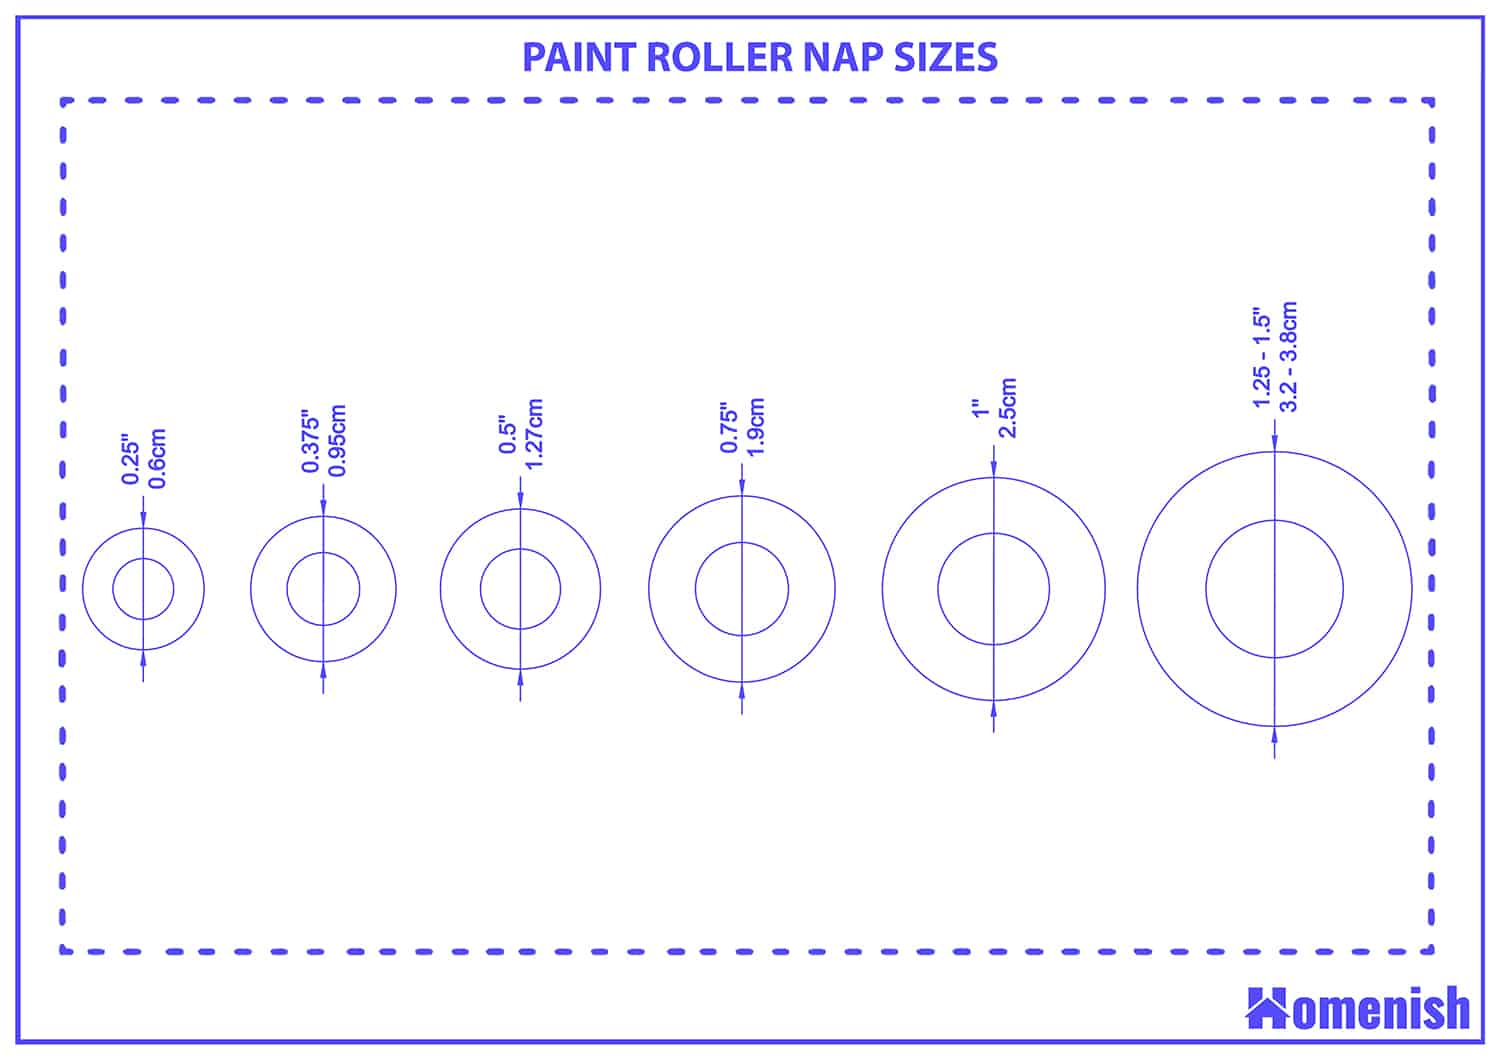 Paint roller nap sizes